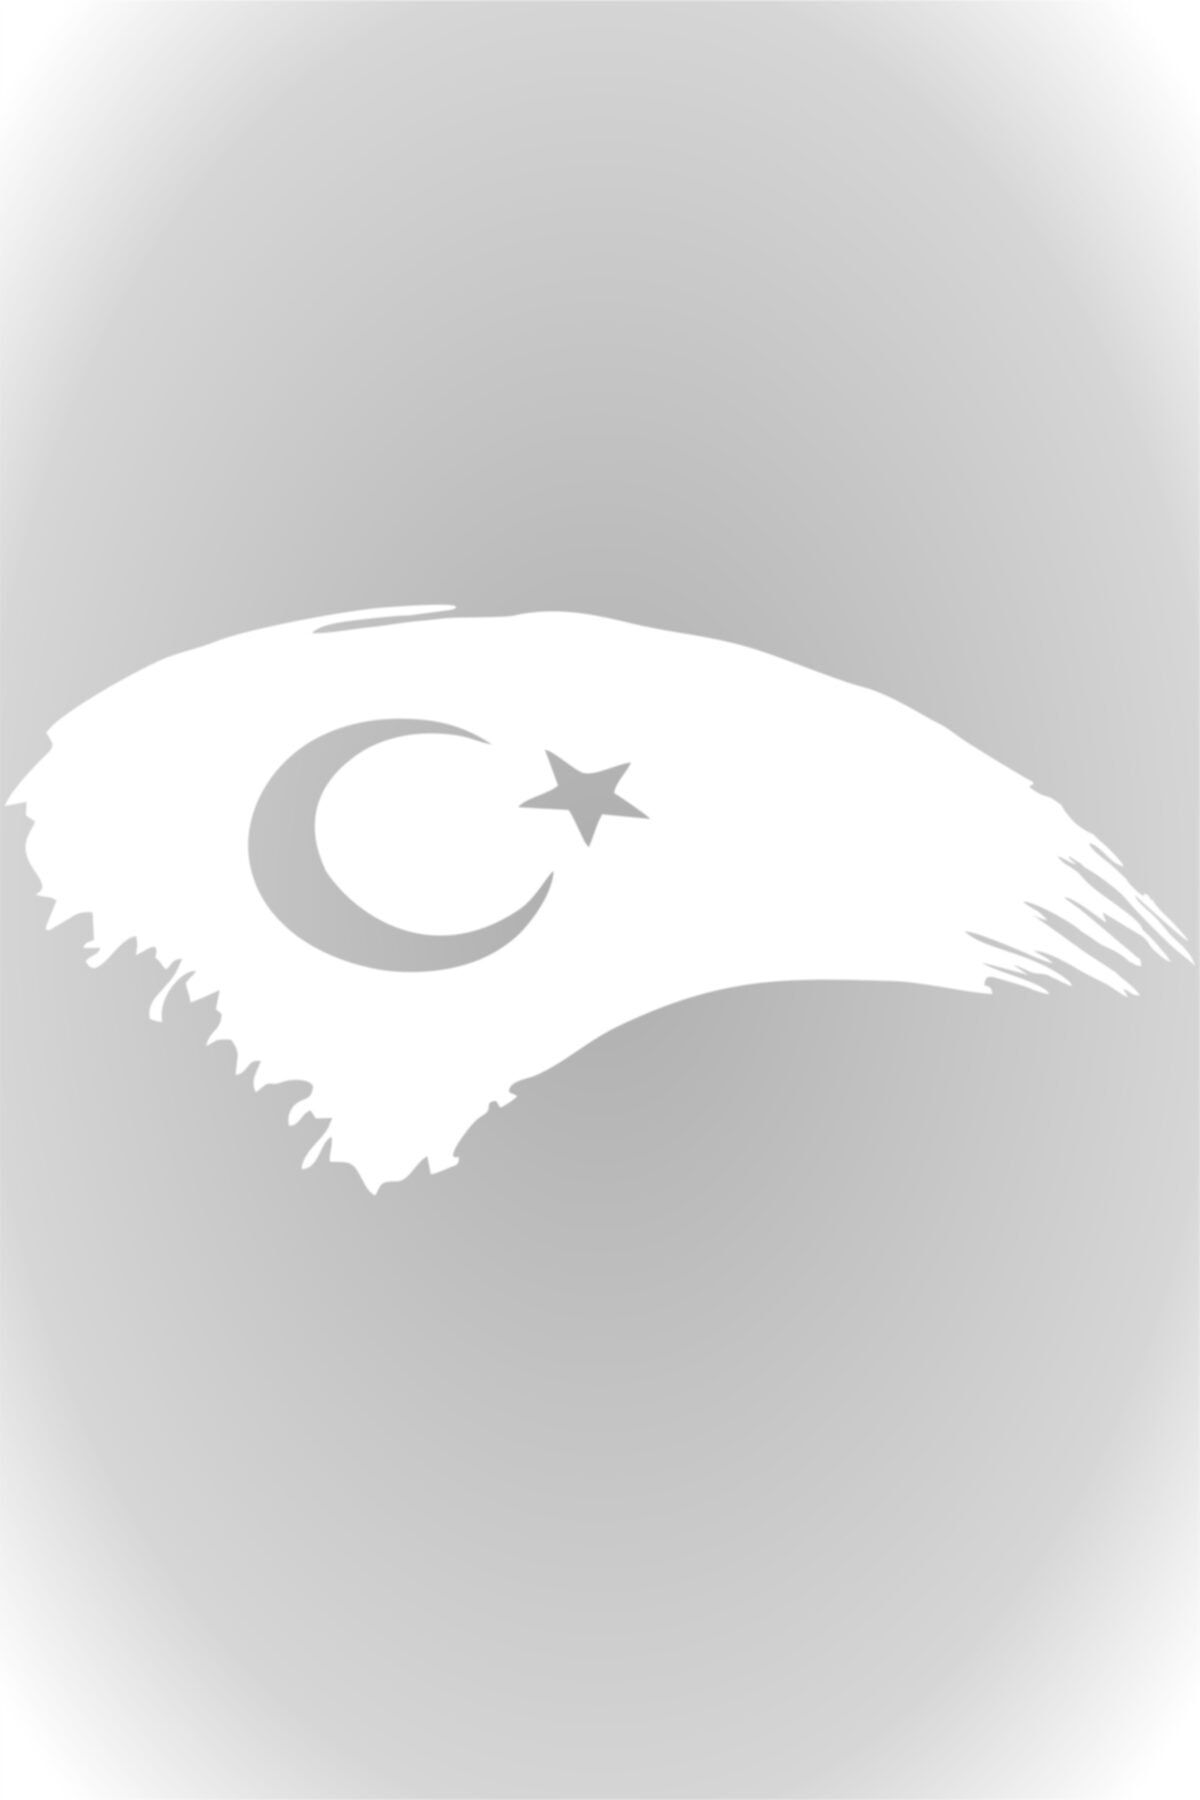 Quart Aksesuar Türk Bayrağı Türkiye Bayrak Sticker Beyaz 15 X 7,5 Cm